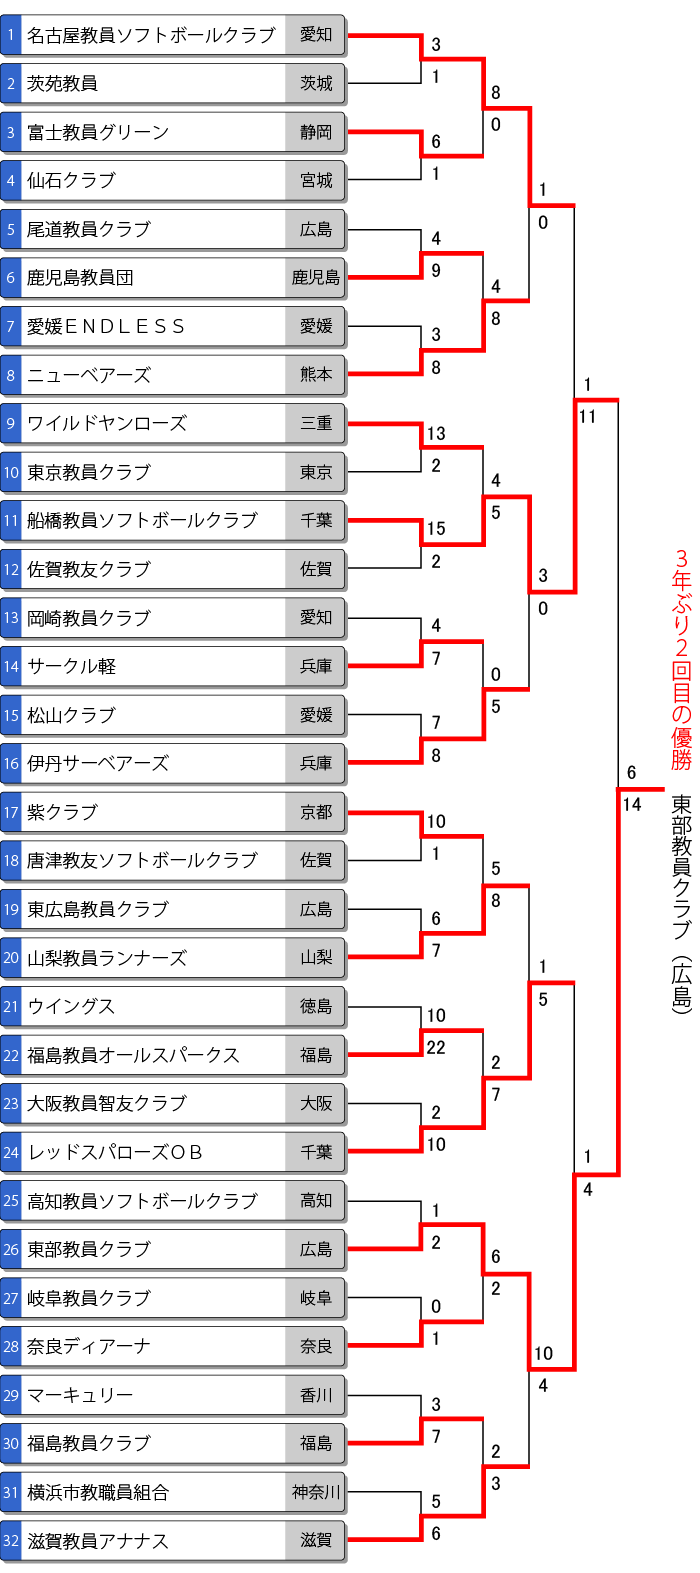 全日本教員選手権トーナメント表